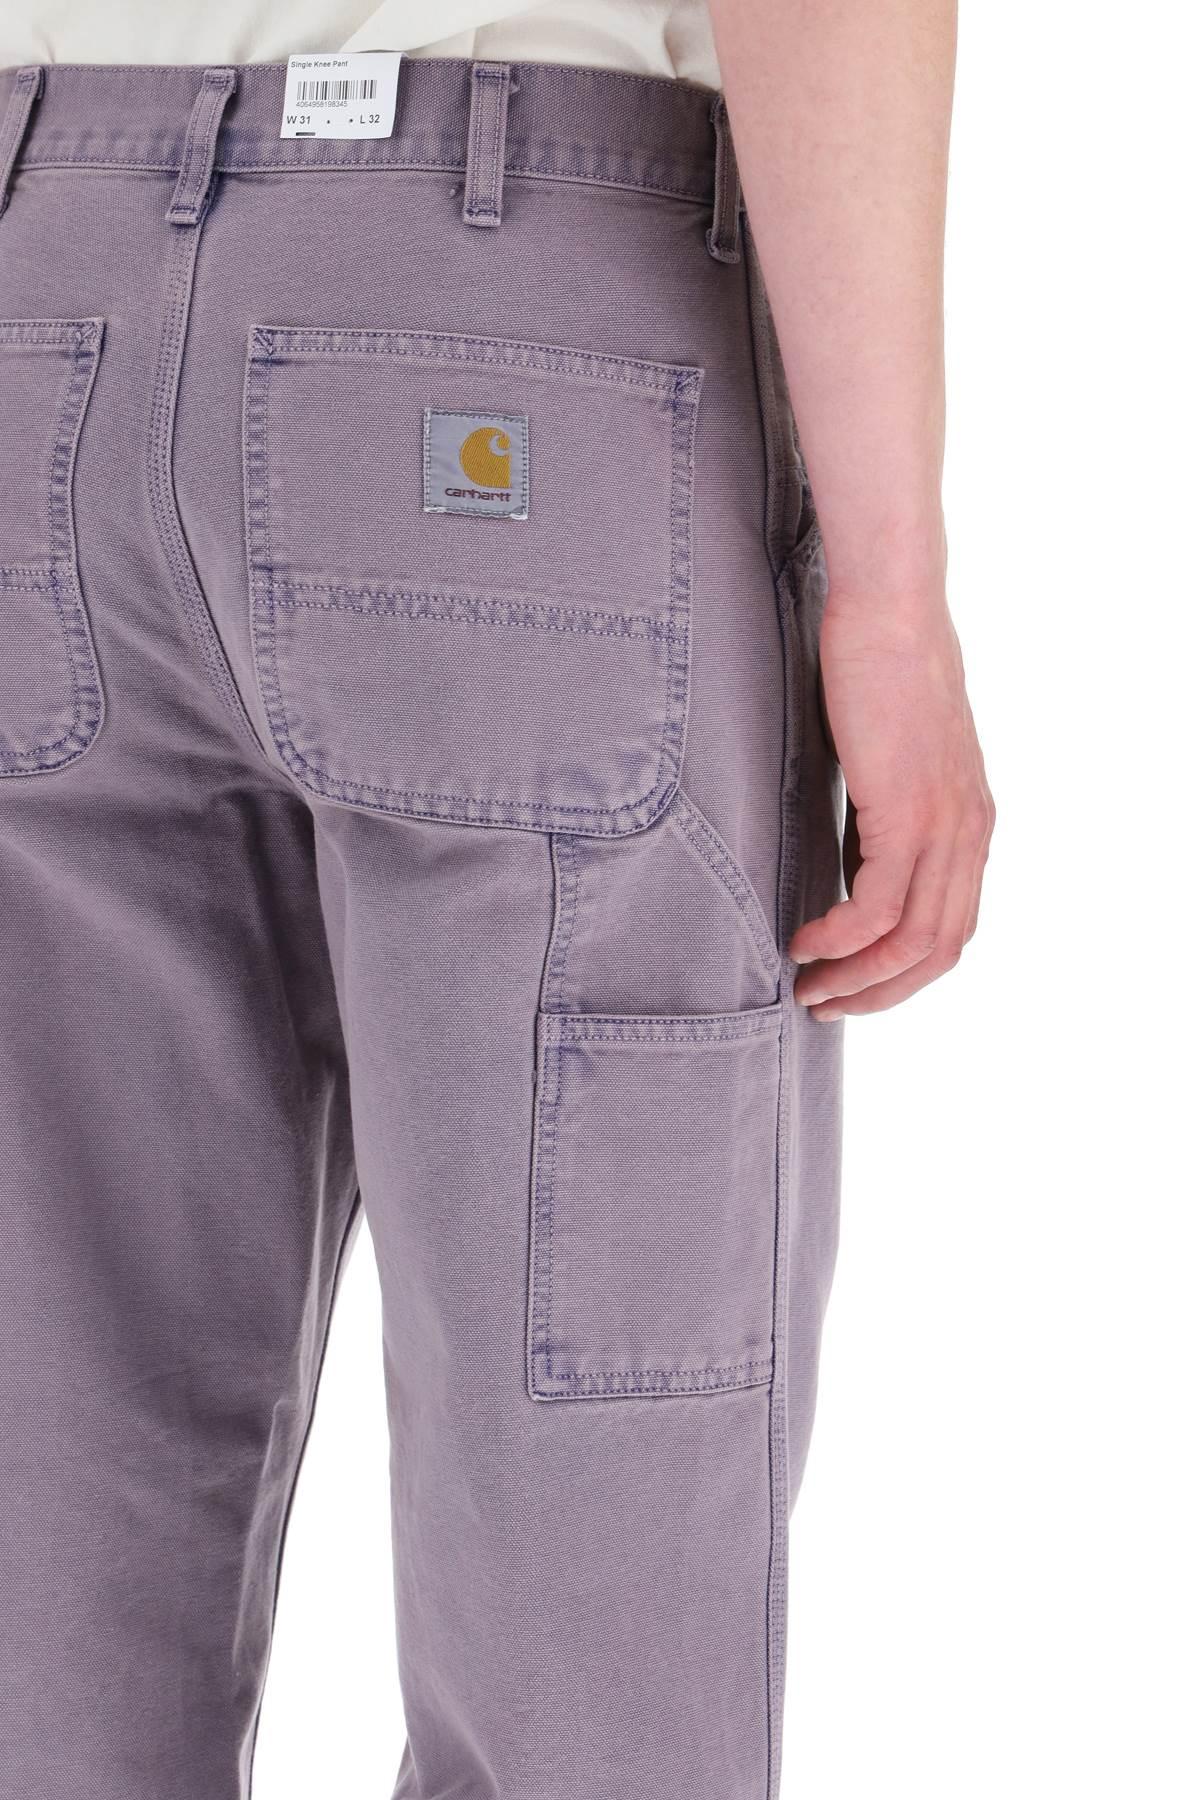 Carhartt WIP Single Knee Dearborn Pants